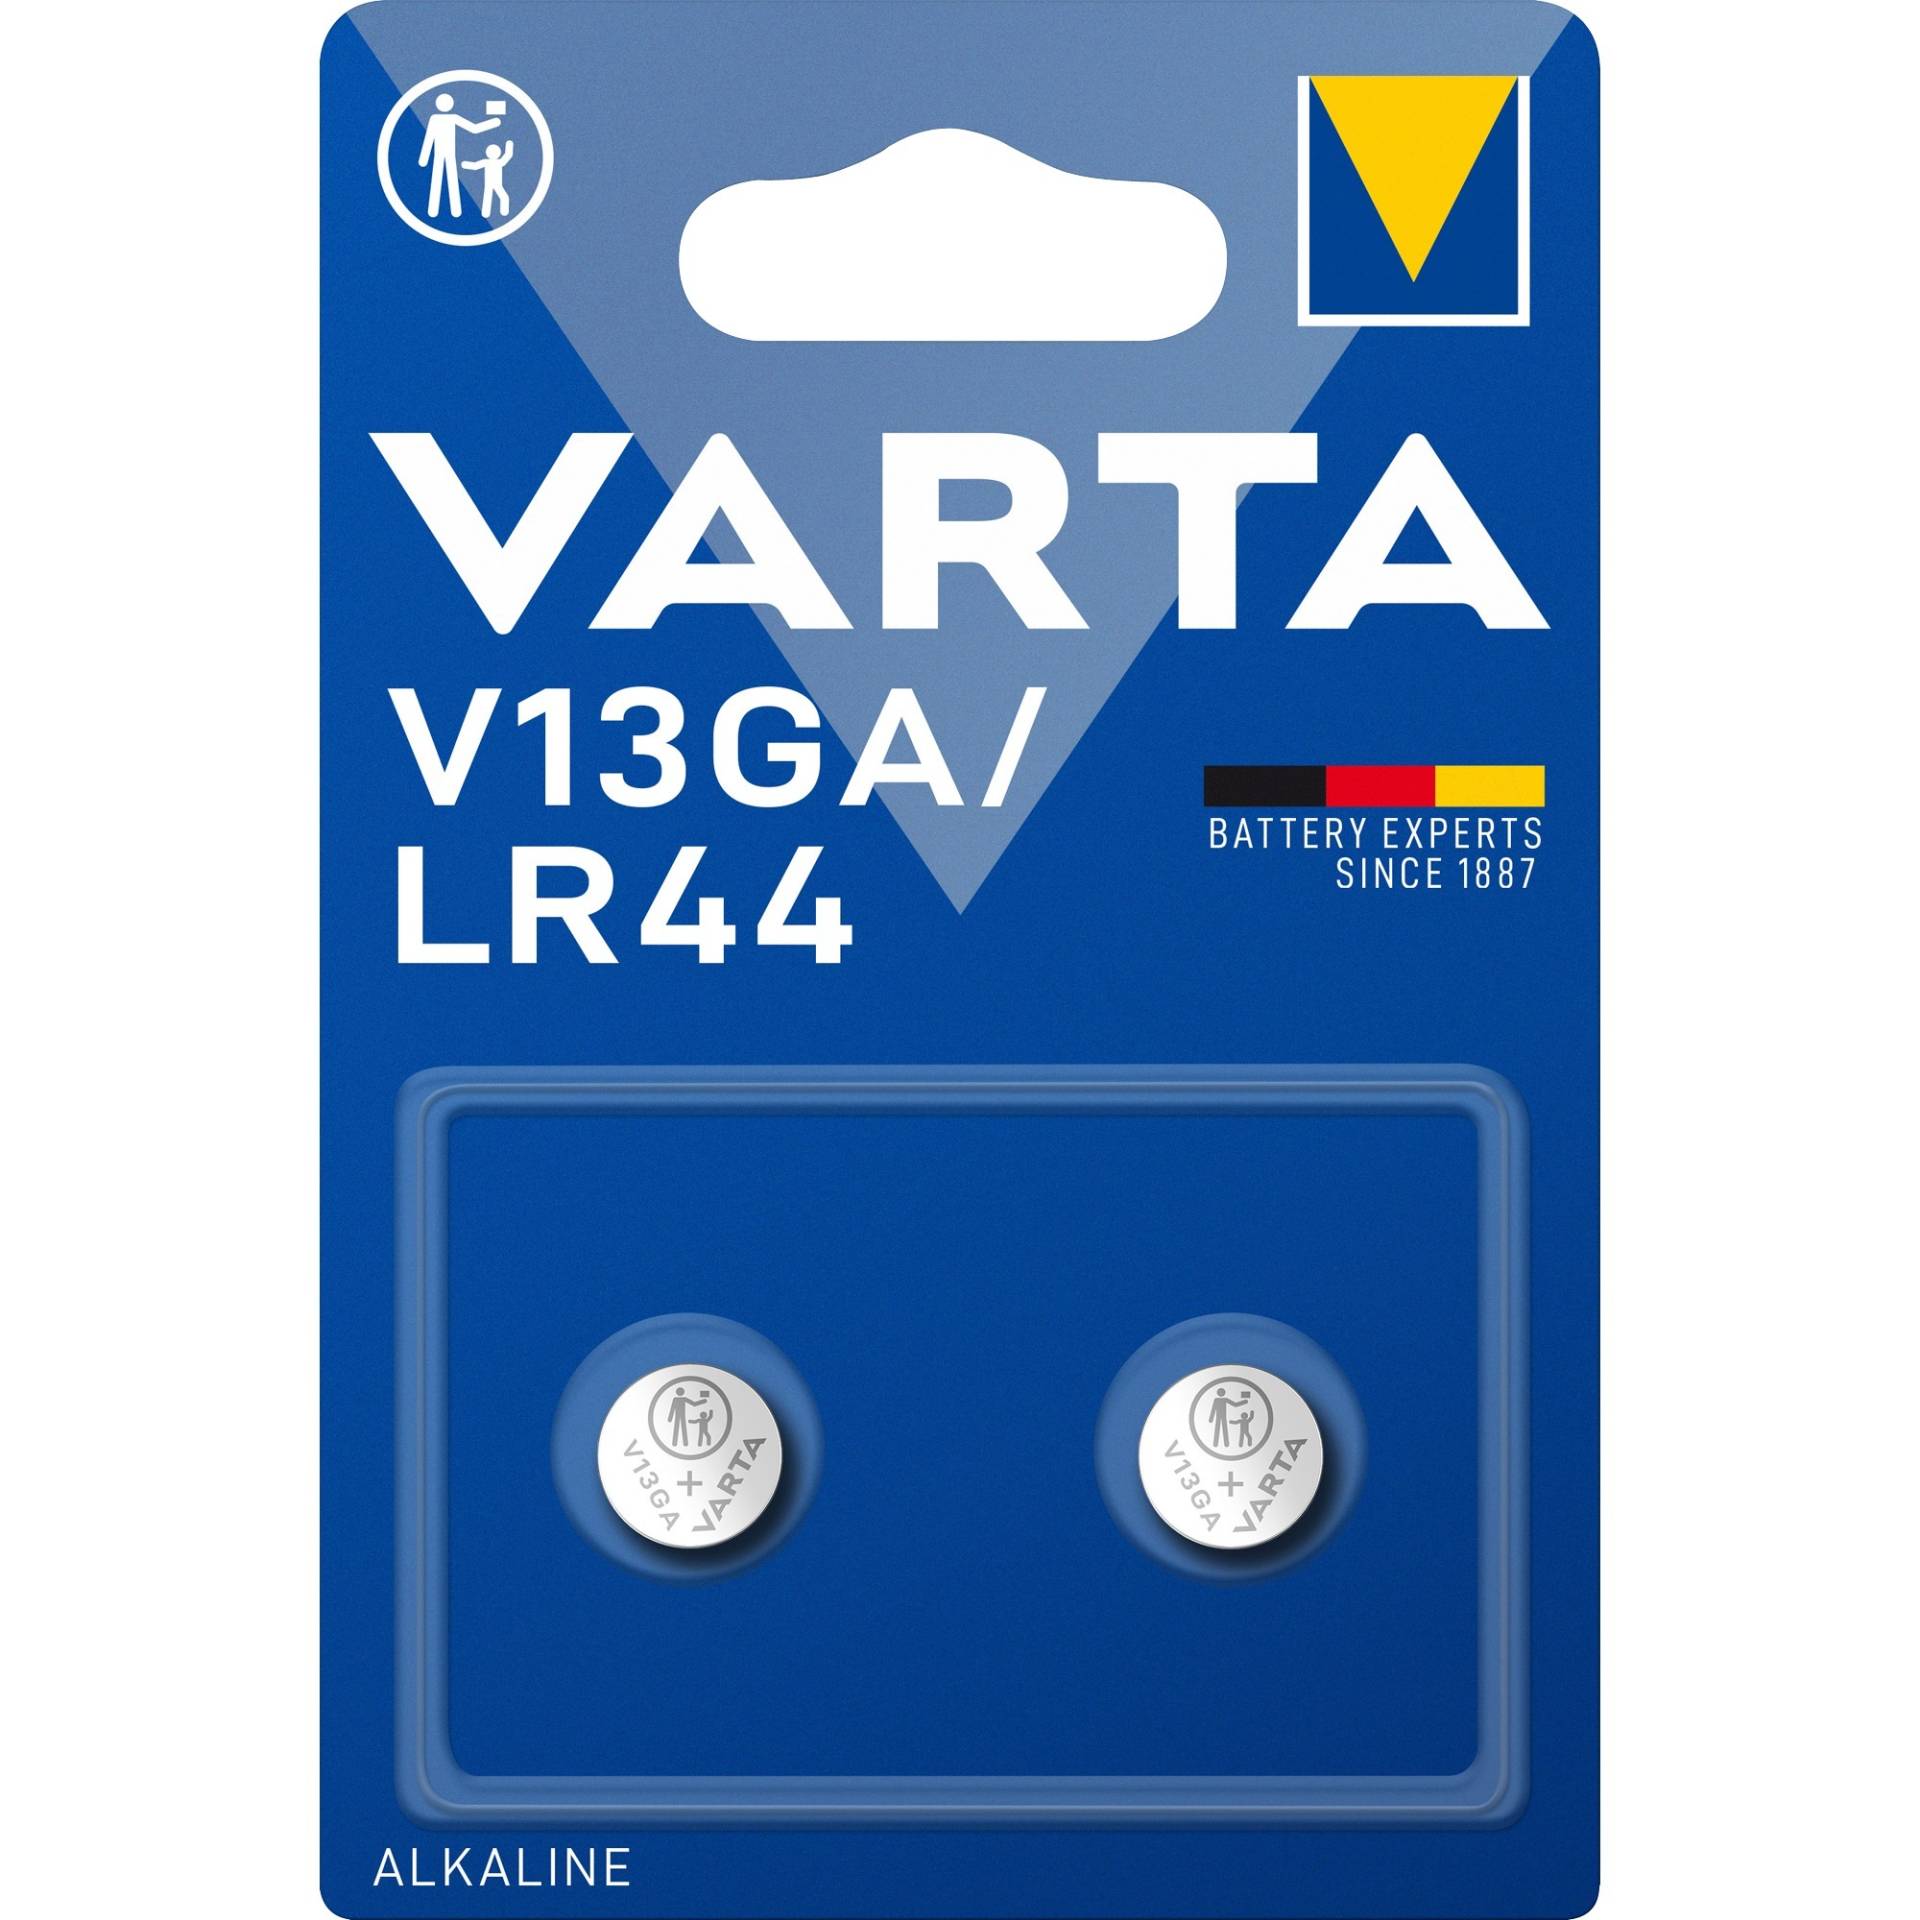 Knopfzelle Alkaline Special V13GA, Batterie von Varta